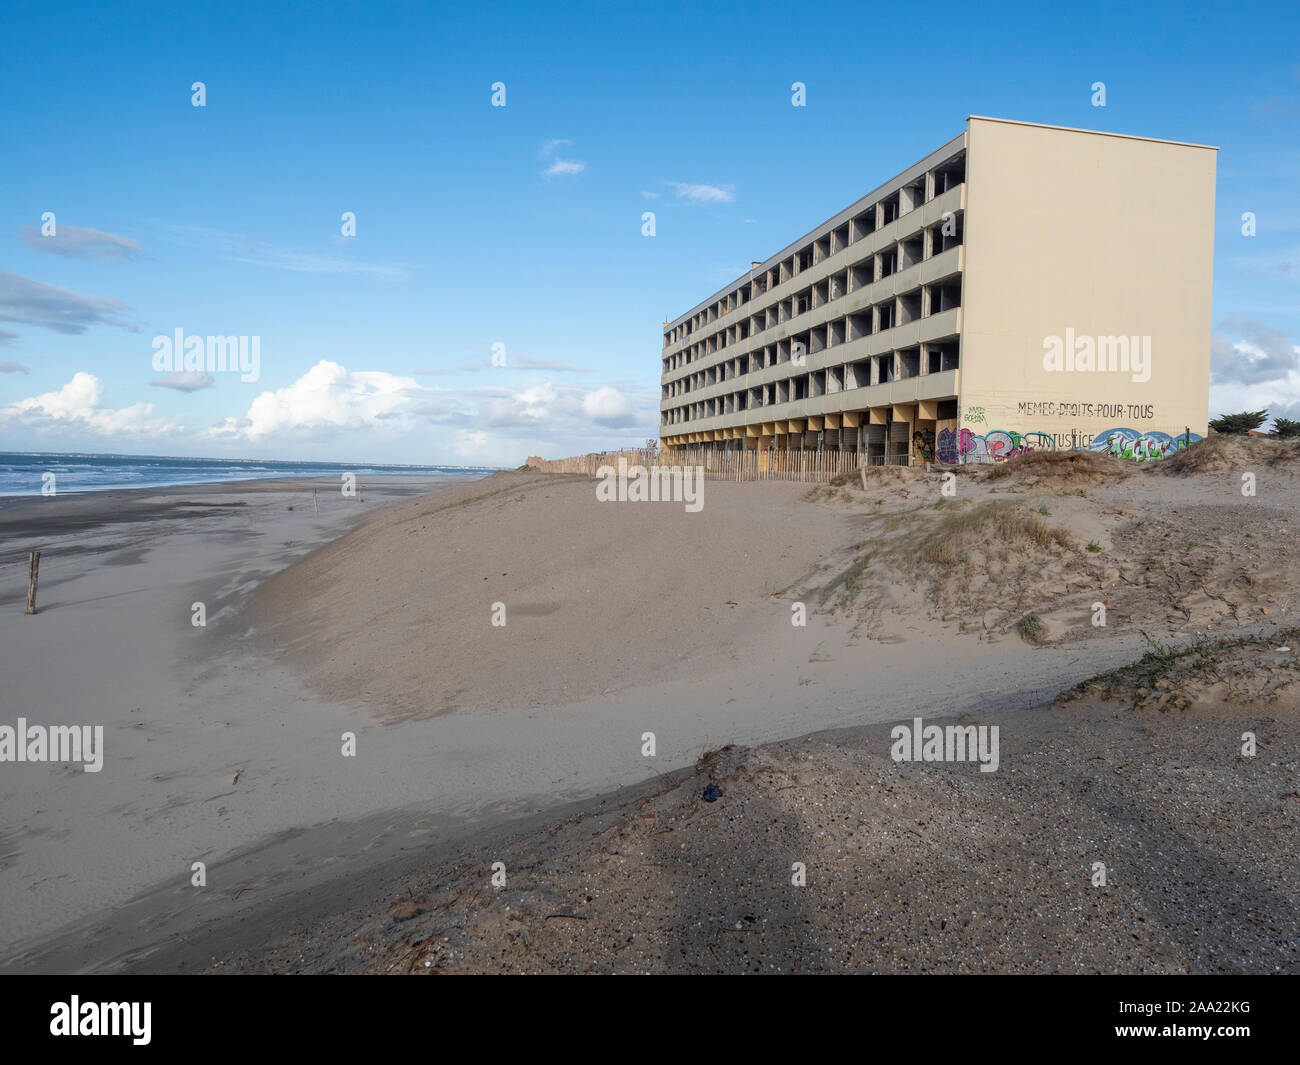 'La señal' Edificio le espera la destrucción debido a la erosión costera. Soulac-sur-Mer, costa atlántica, Francia. Foto de stock